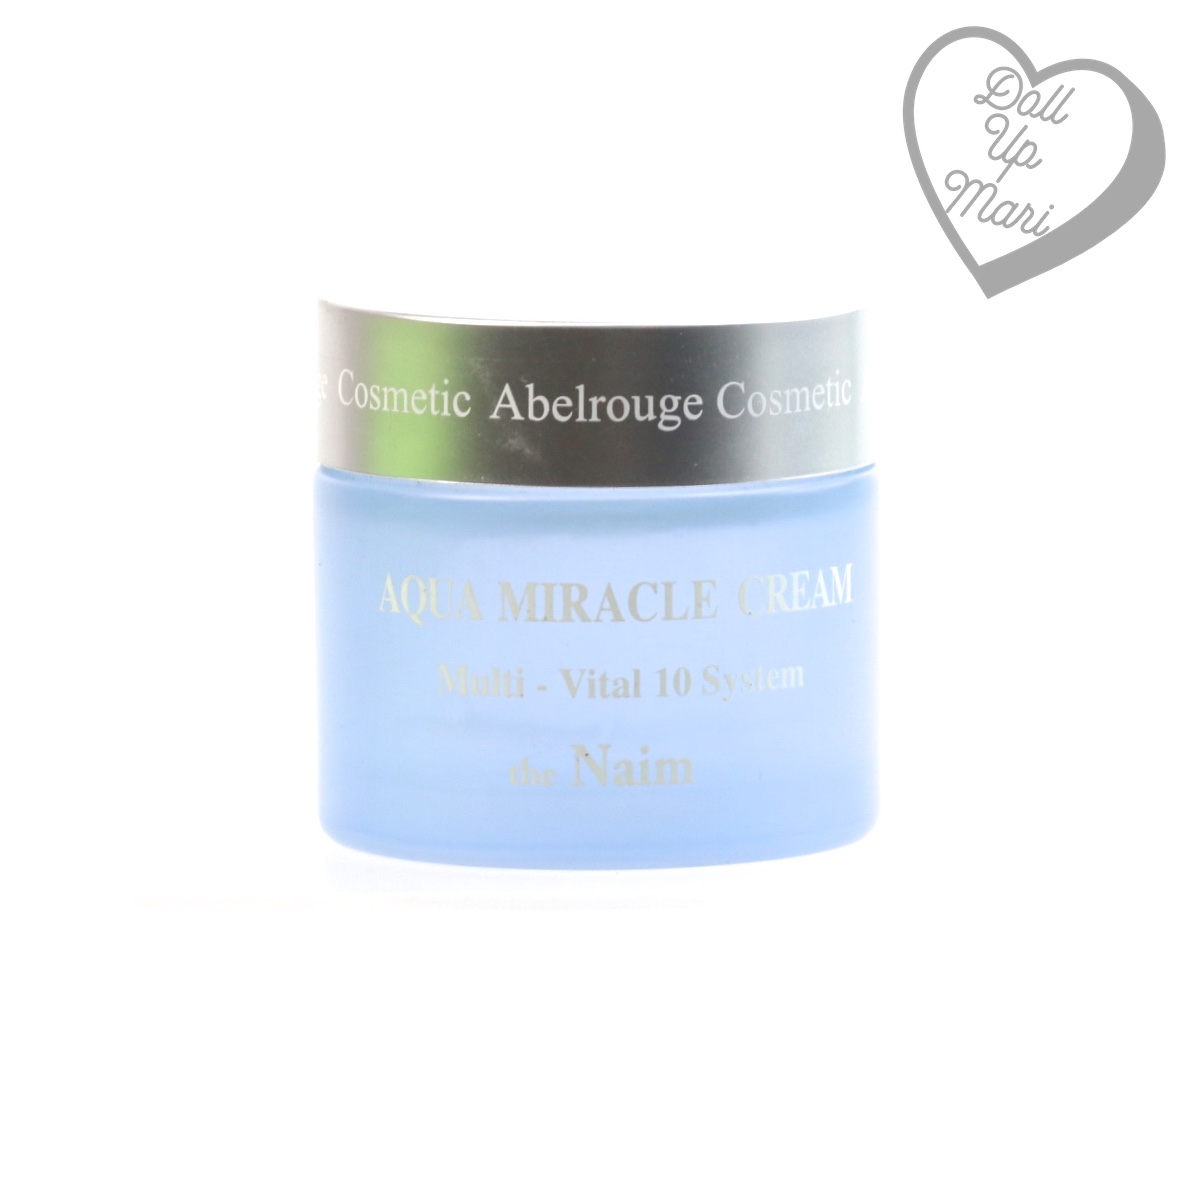 Abelrouge Aqua Miracle Cream